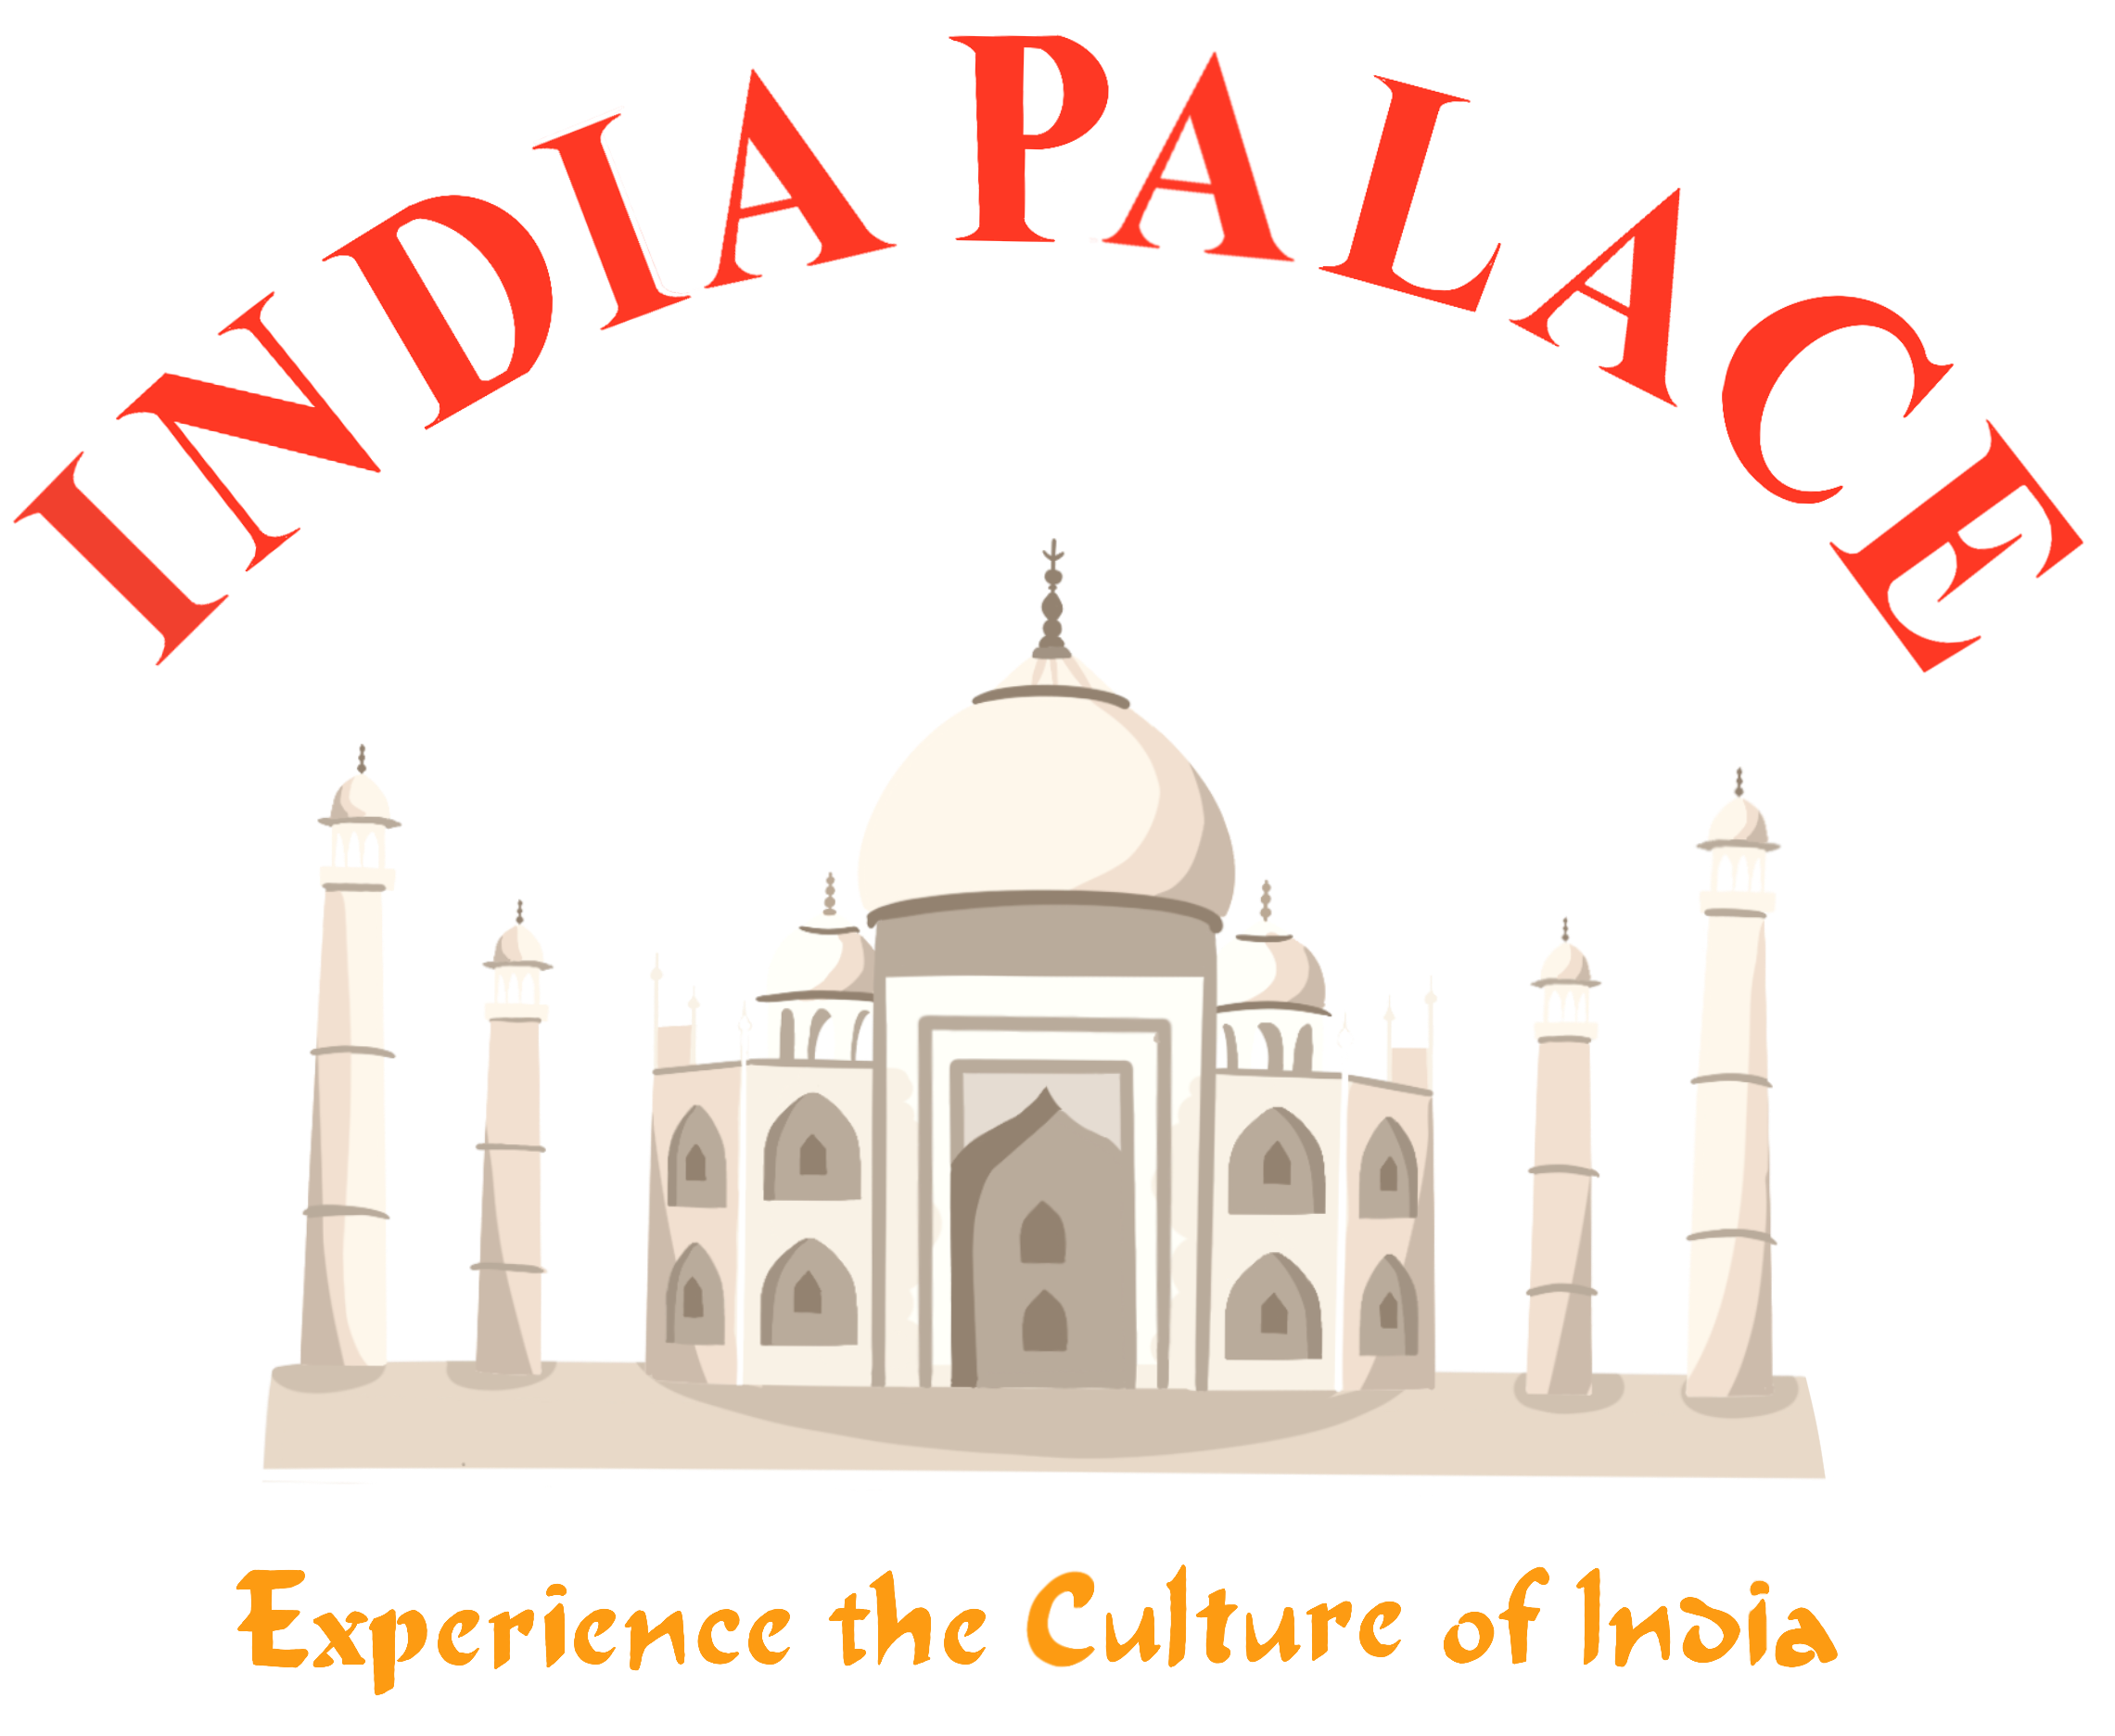 India Palace